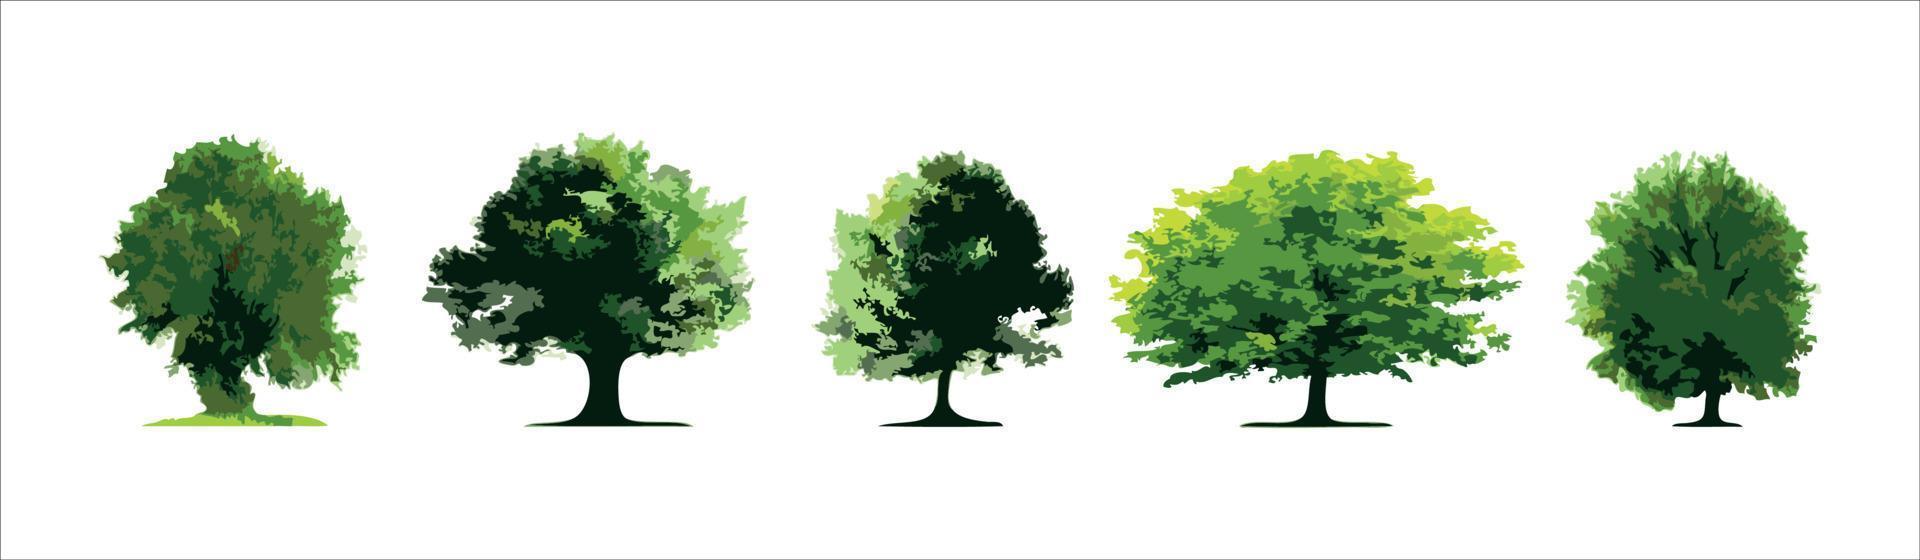 Reihe von Bäumen auf weißem Hintergrund. vektor